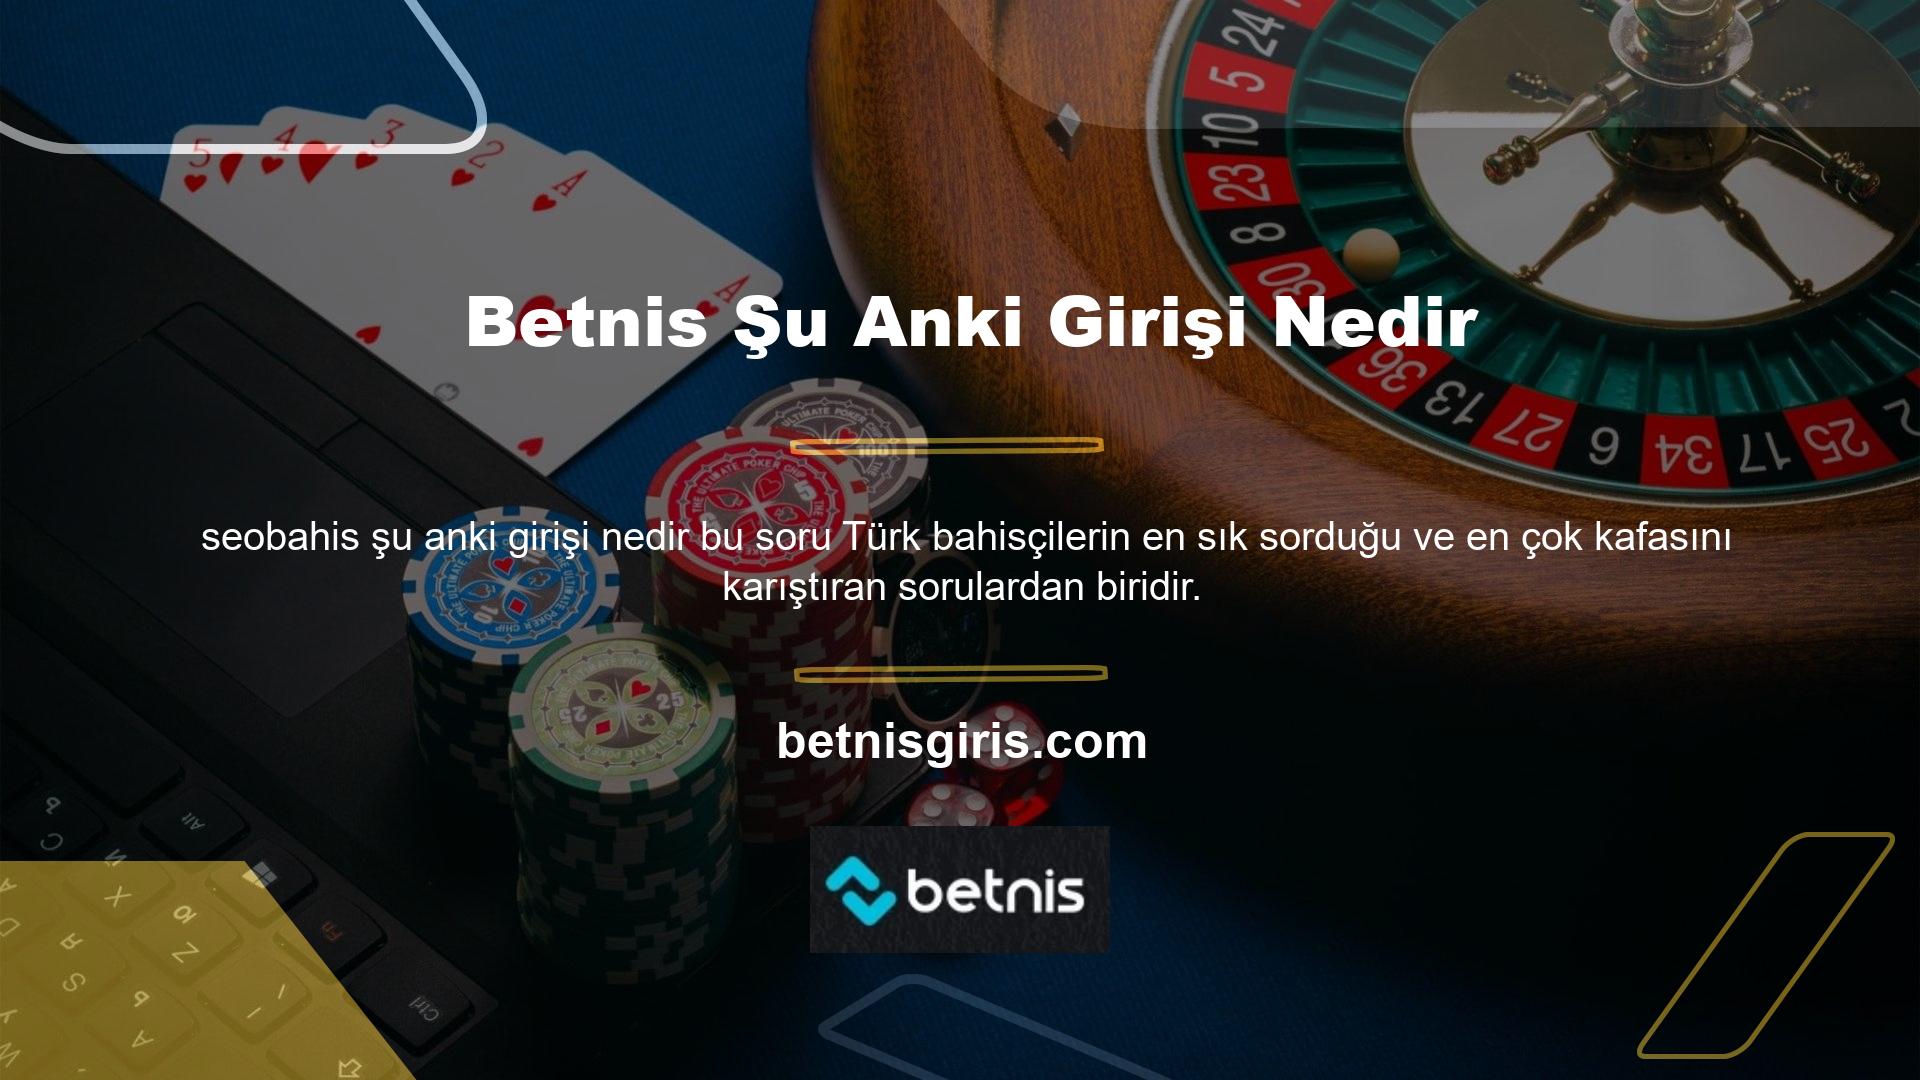 Zira Türkiye'de faaliyet gösteren casino siteleri KHK ile kapatılmıştır